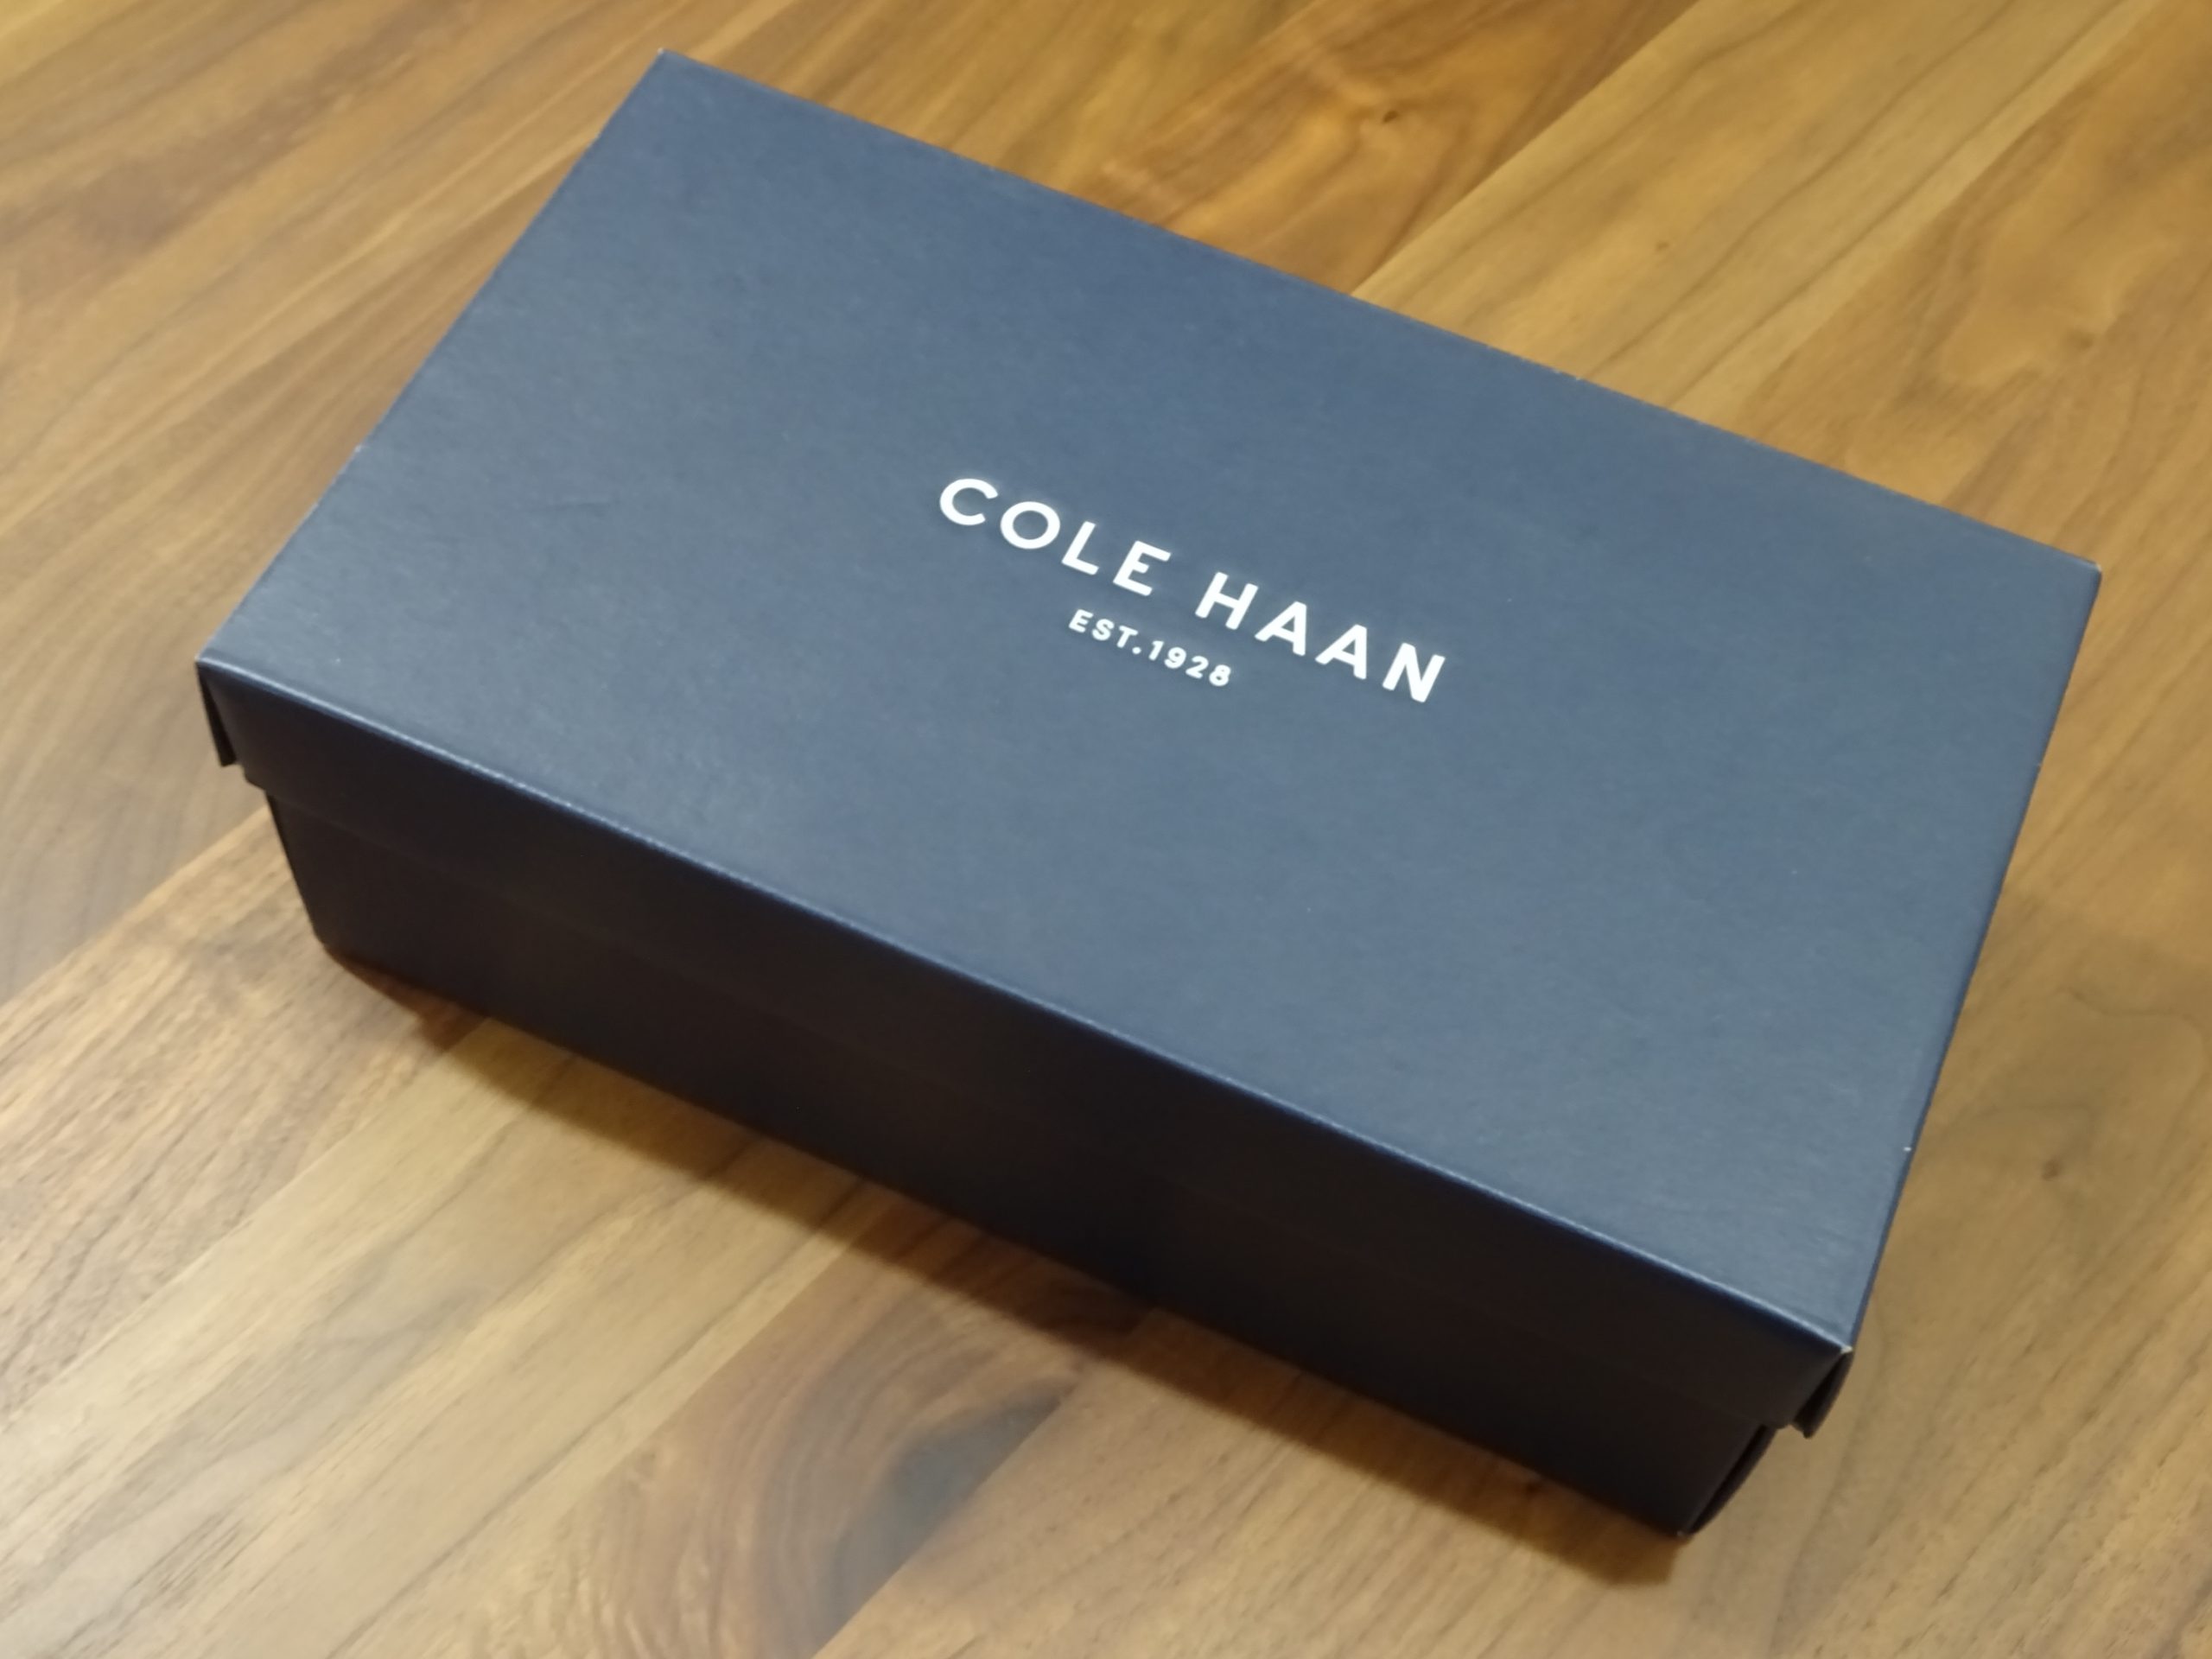 Cole Haan(コール・ハーン)の魅力～NIKEのAir搭載モデルからビジネスマンの足元を変えた歴史～